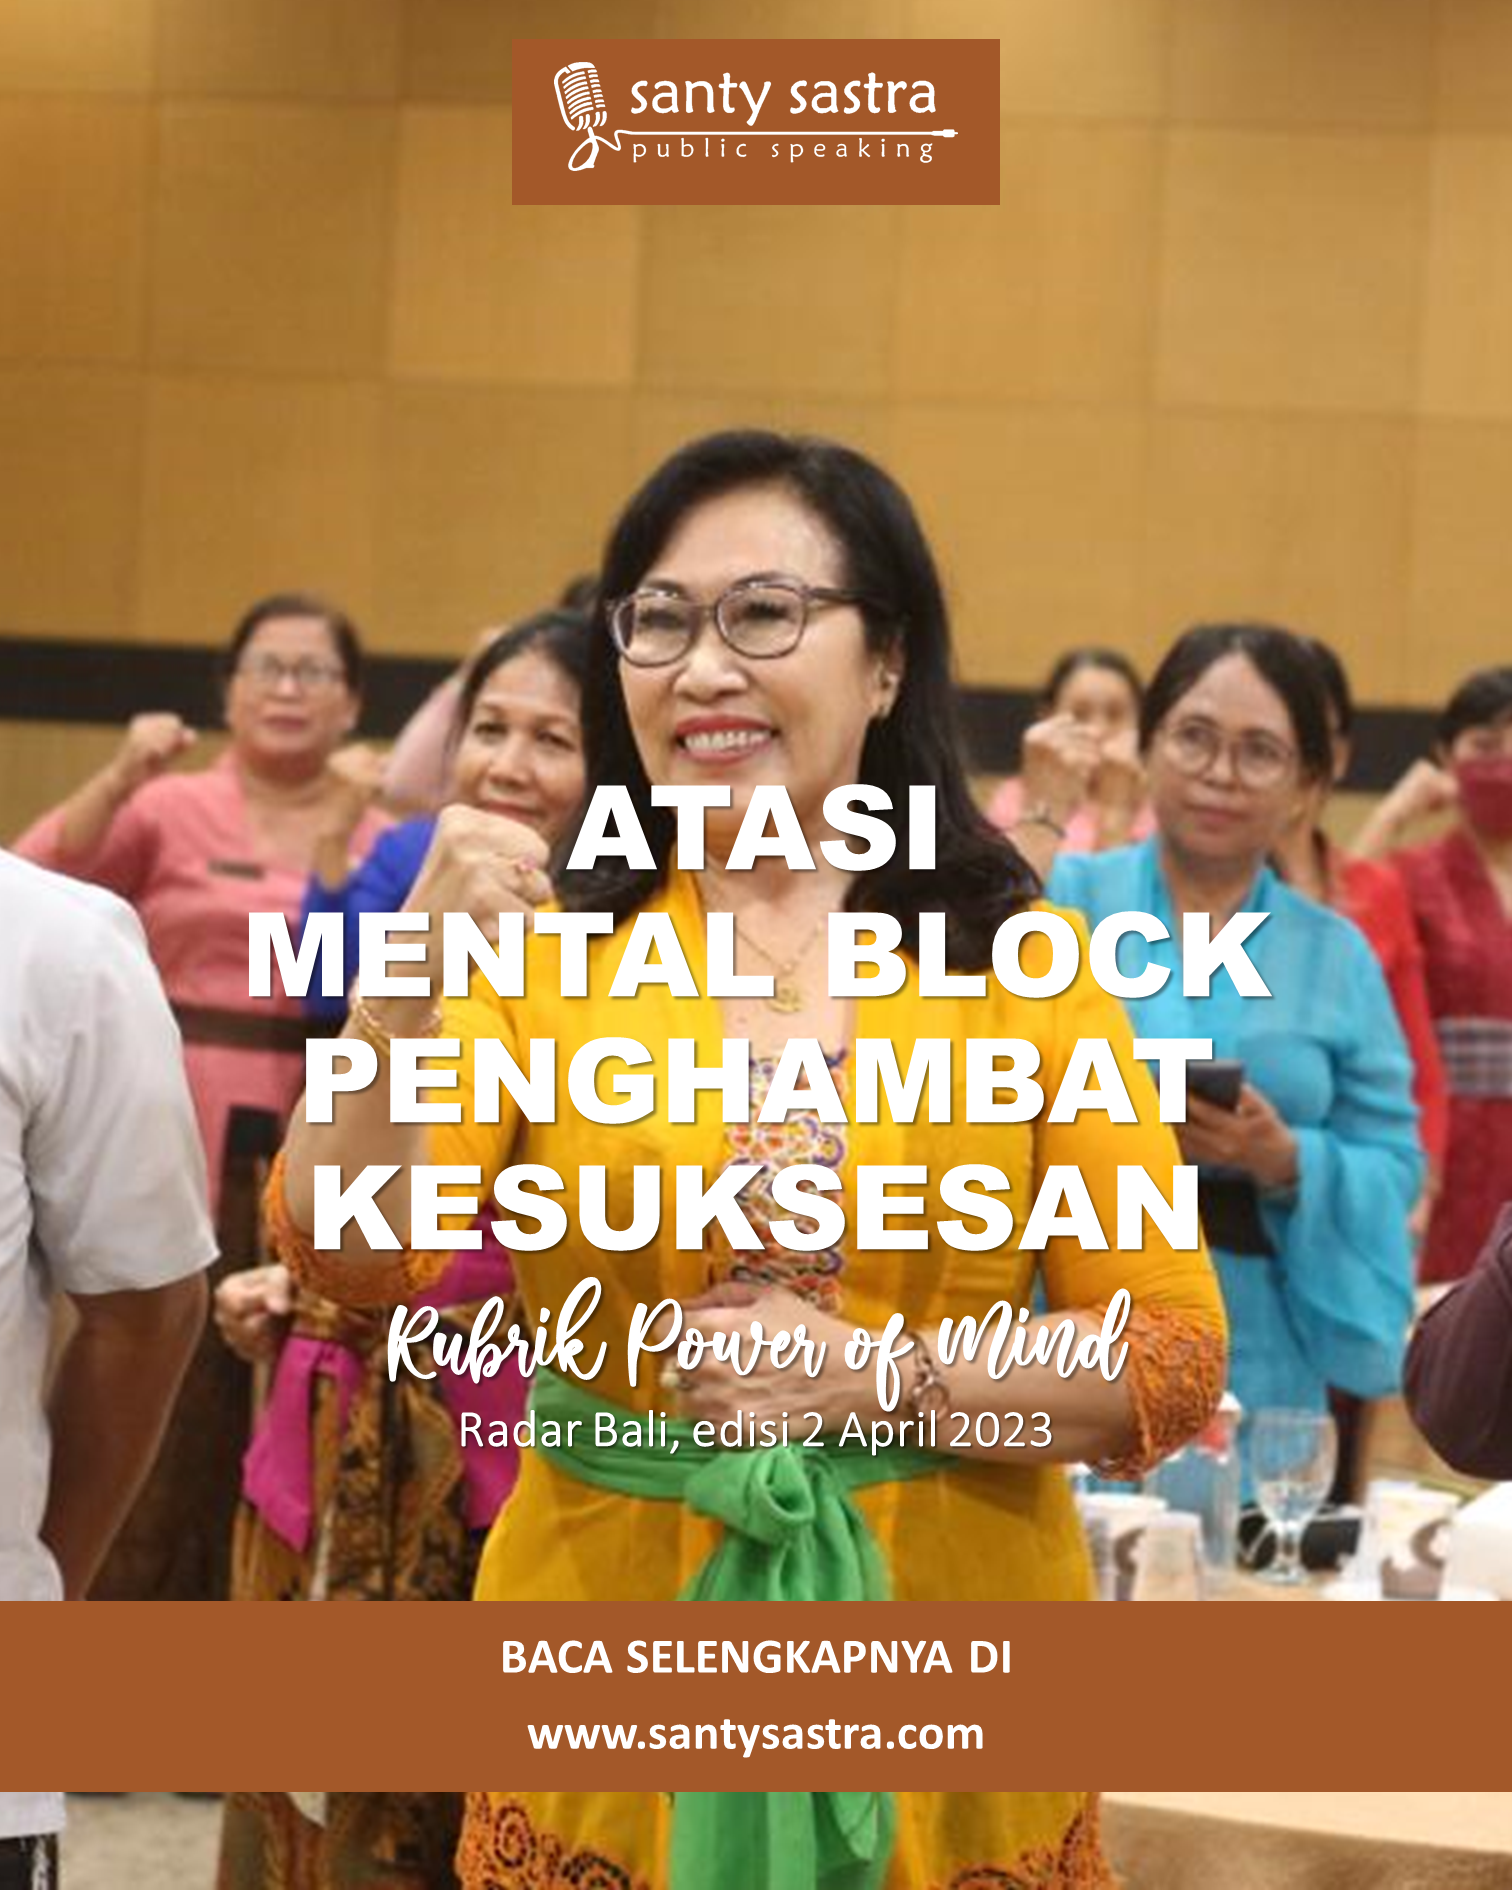 1 - Atasi Mental Block Penghambat Kesuksesan - Rubrik Power of Mind - Santy Sastra - Radar Bali - Jawa Pos - Santy Sastra Public Speaking